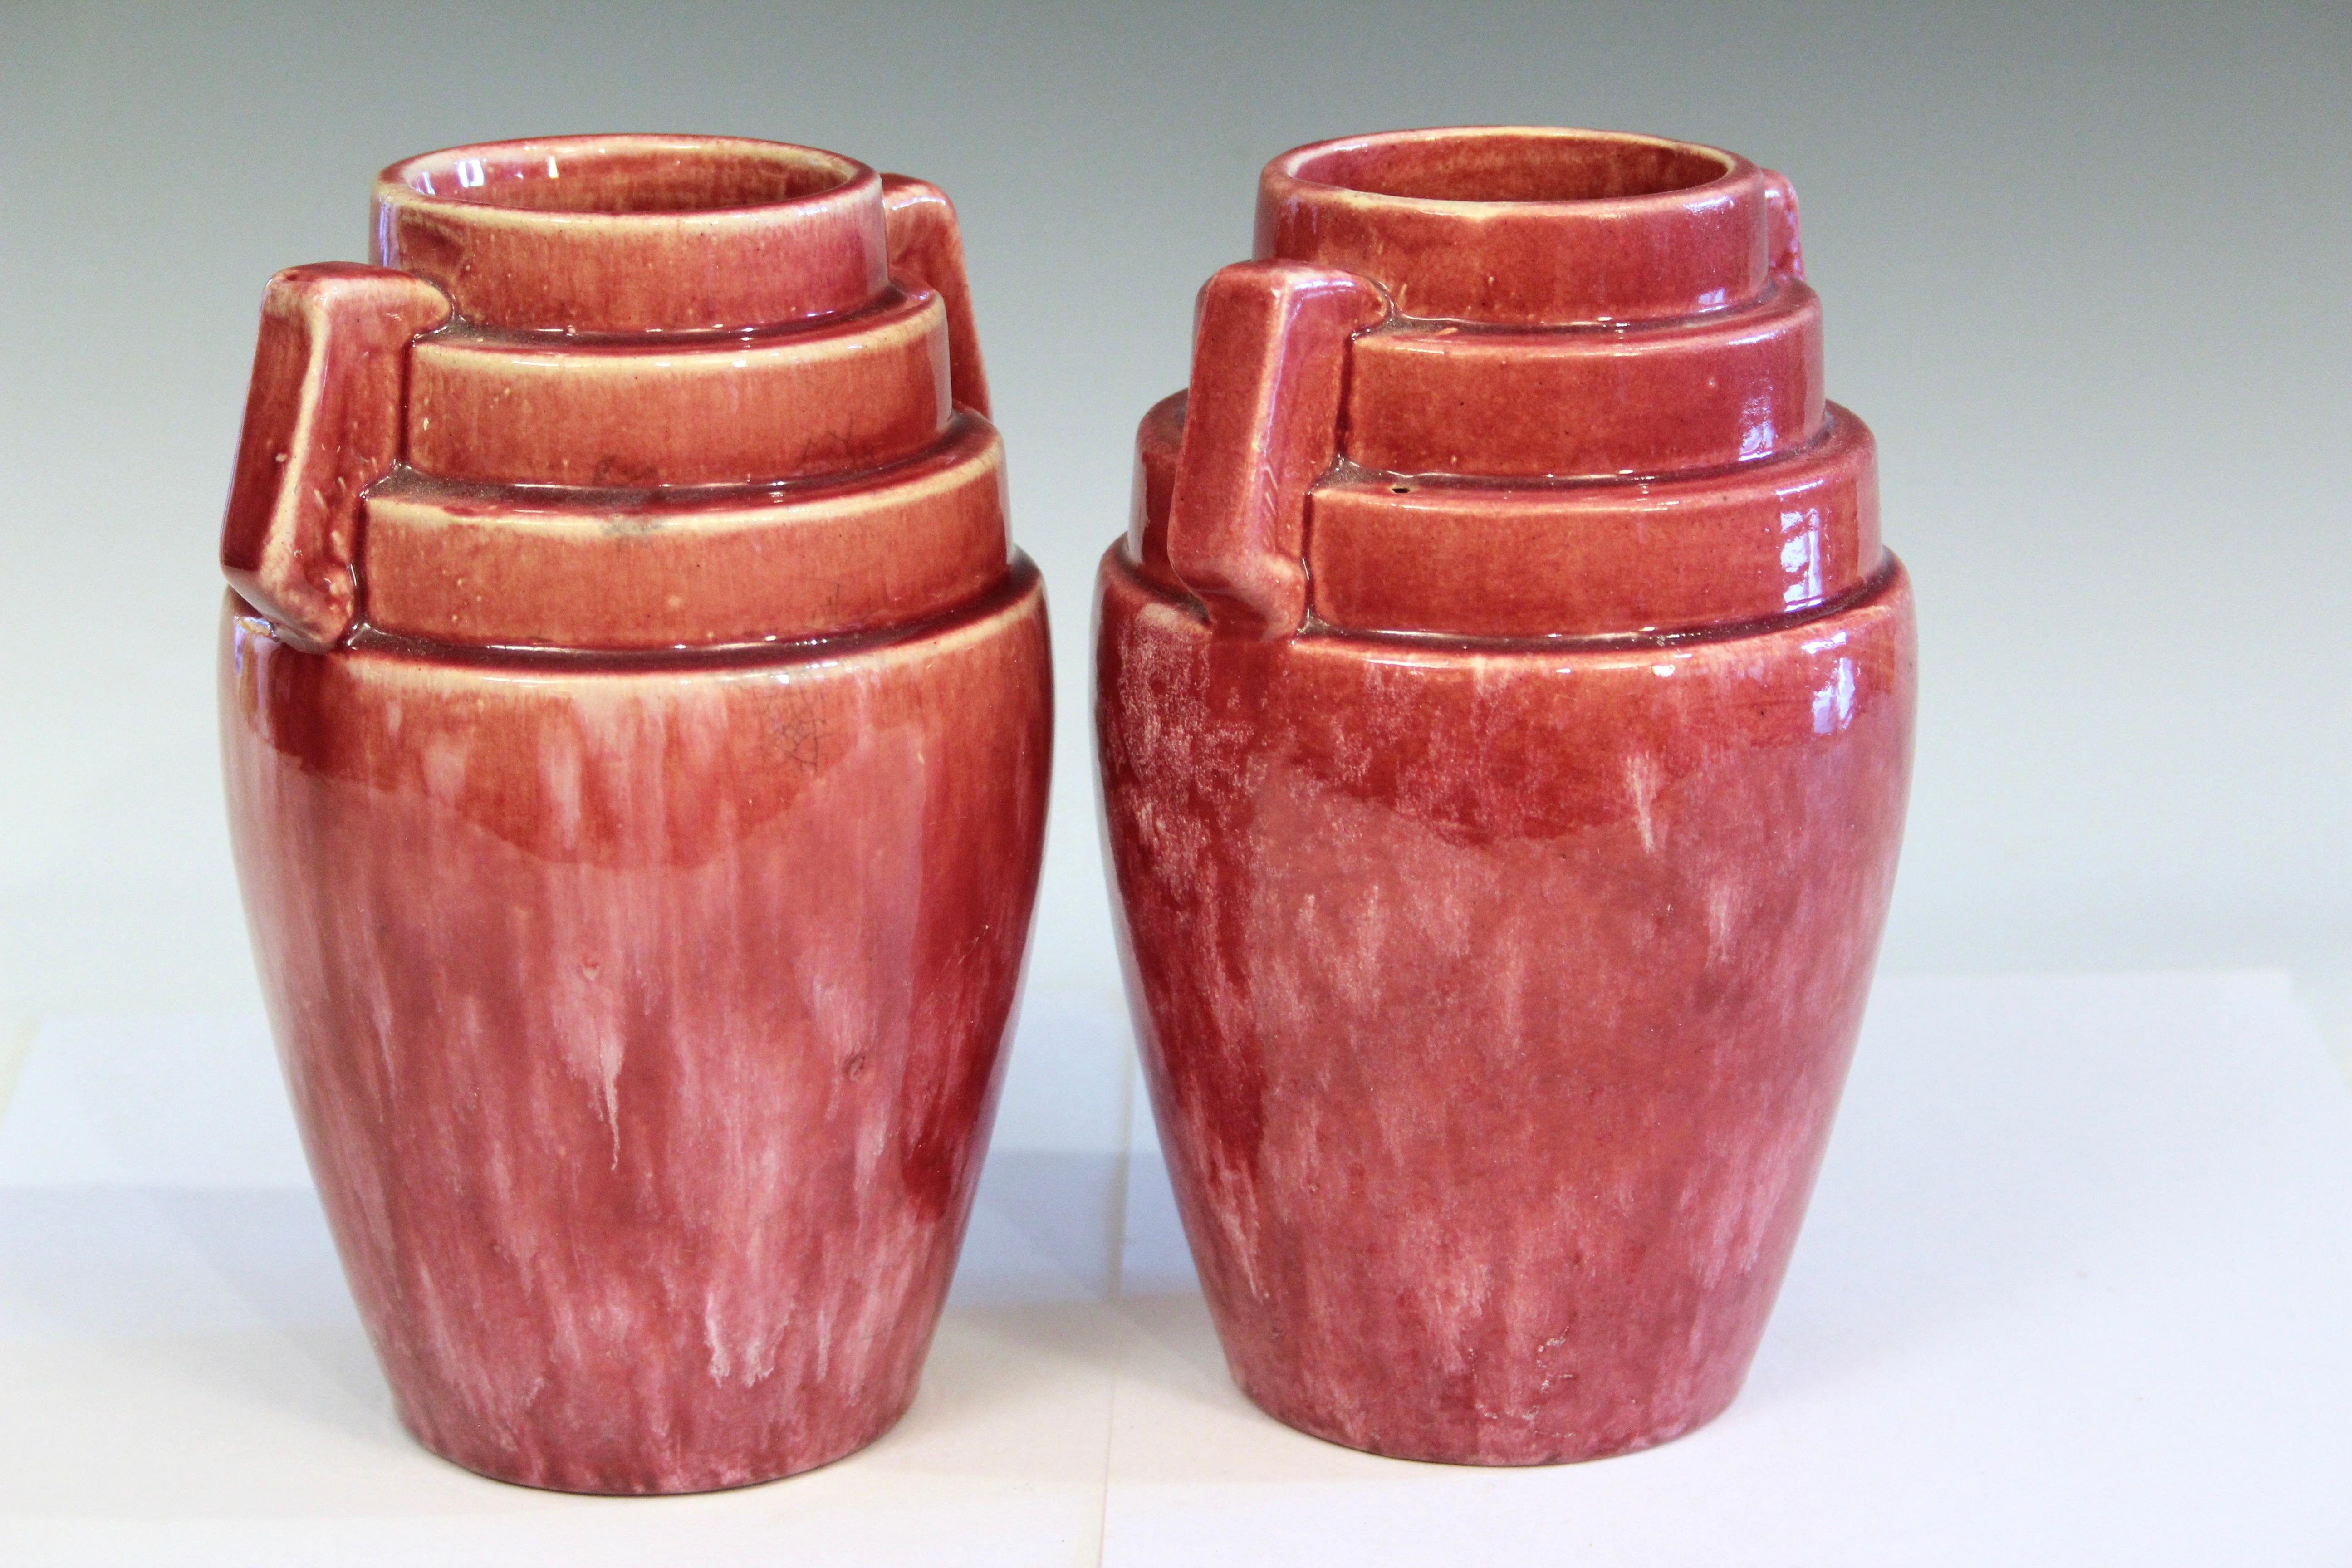 mccoy pottery vases